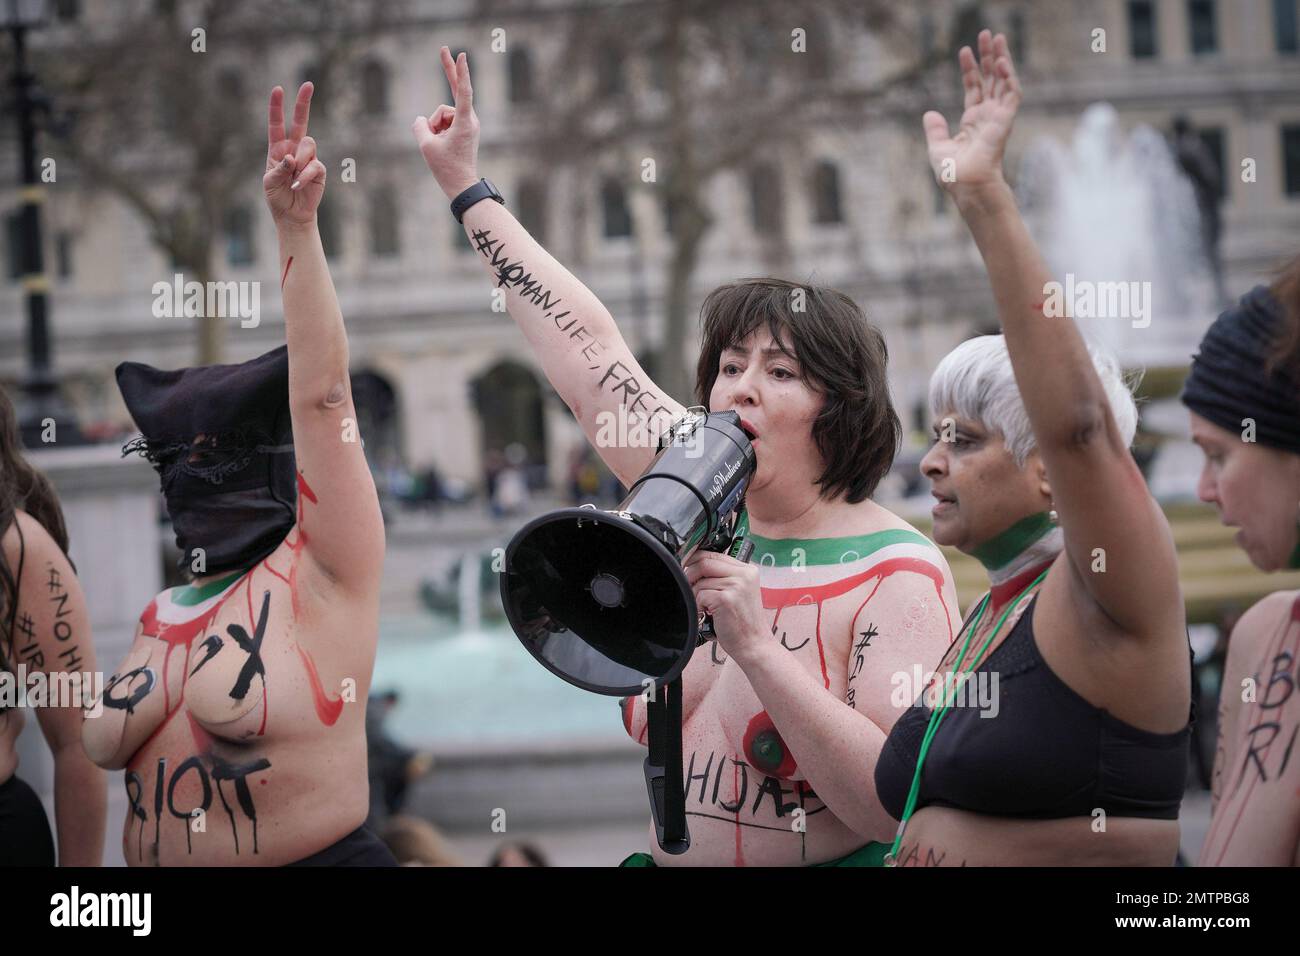 London, Großbritannien. 1. Februar 2023 Britisch-iranische Frauen protestieren gegen den Welt-Hijab-Tag, indem sie an einer globalen Demonstration zum „Körperaufstand“ teilnehmen, um die anhaltende Unterdrückung von Frauen im Iran zu verteidigen und die obligatorischen Hijab-Regeln anzufechten. Er folgt auch auf Fotos von Frauen im Iran, die ihre BHs mit versteckten Gesichtern und Schlüsselworten wie „Du bist der Perverse; ich bin eine freie Frau“ zeigen Ausgelöst durch den Tod des 22-jährigen Mahsa Amini, werden im Iran weiterhin regierungsfeindliche Proteste unternommen, wobei Tausende Demonstranten verhaftet und mit Todesurteilen belegt werden. Kredit: Guy Corbishley/Alamy Live News Stockfoto